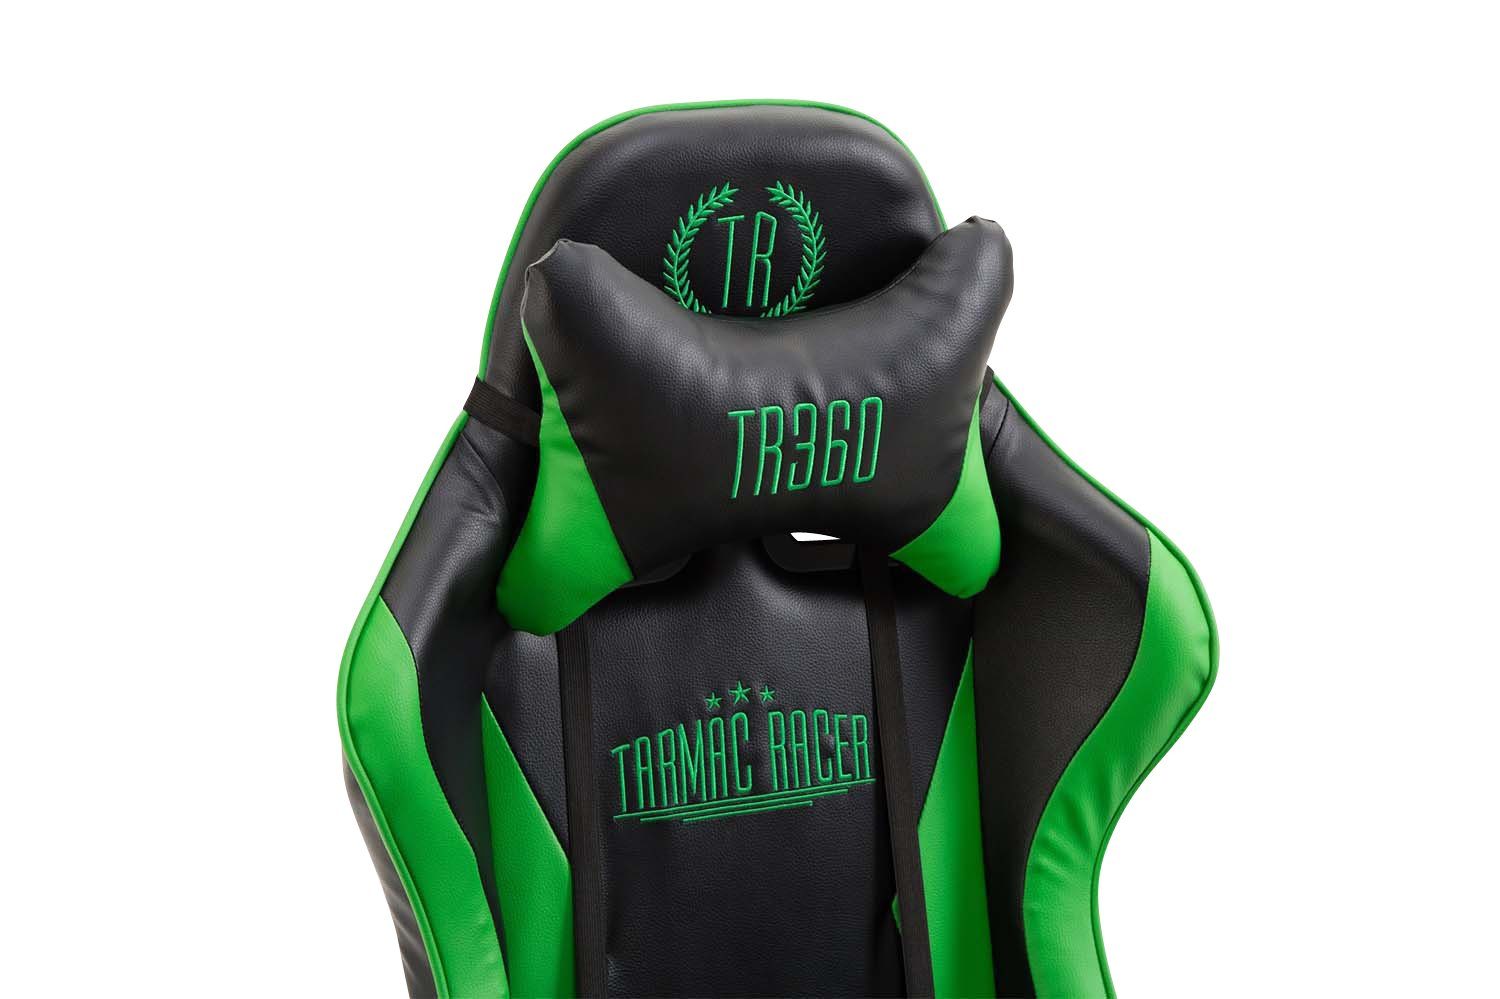 und Gaming schwarz/grün Kunstleder, drehbar höhenverstellbar Chair CLP Ignite